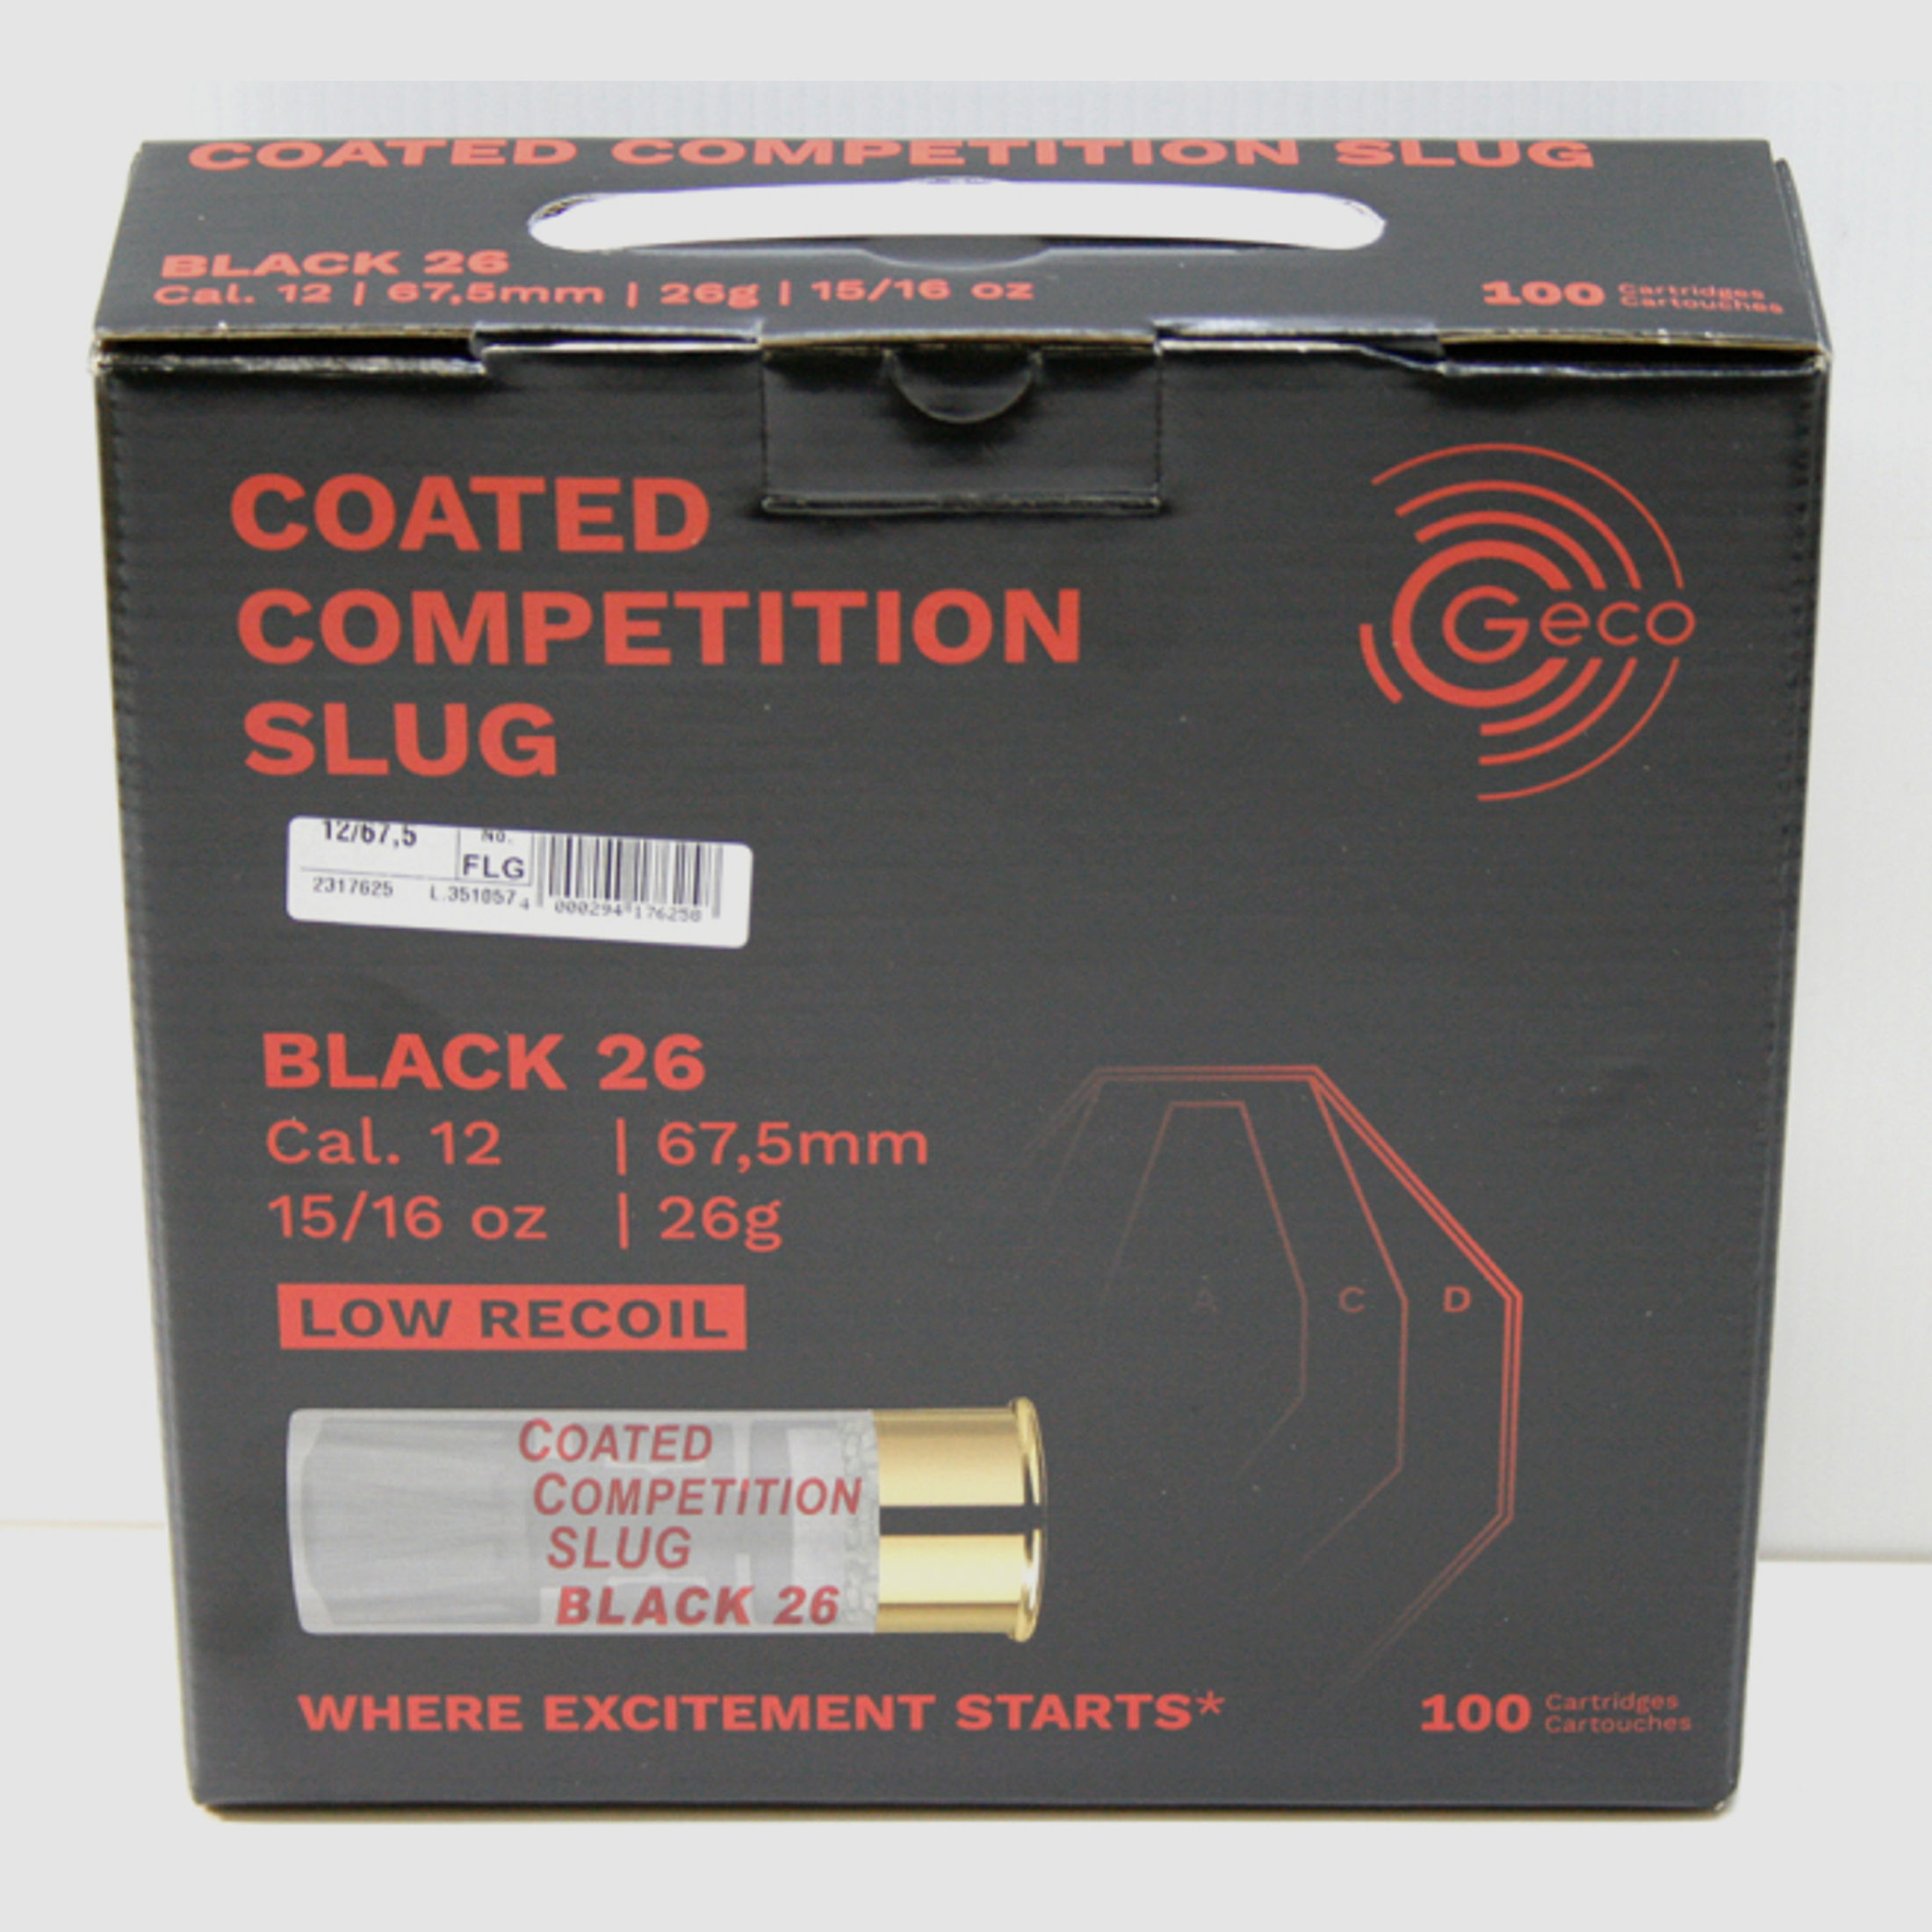 100 Schuss GECO Coated Competition Slug BLACK-26 12/67,5MM 26g 401gr LOW RECOIL Sport Slug FLG IPSC